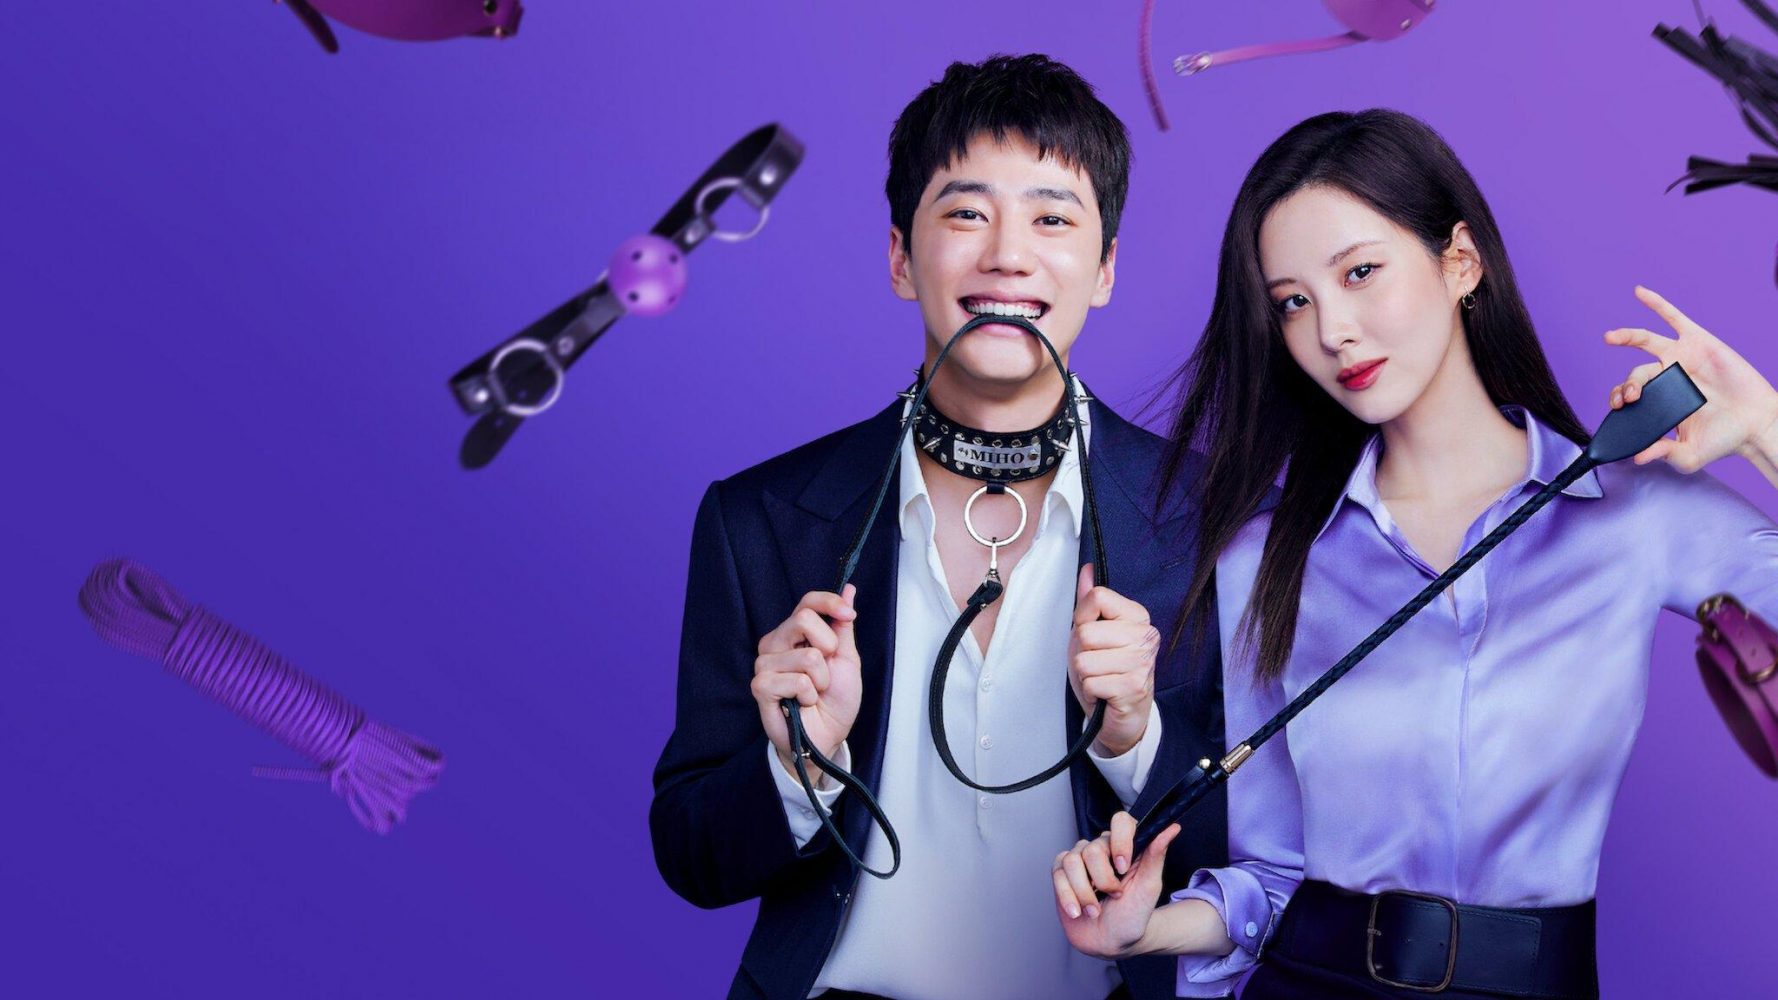 Phim mới của Lee Jun Young: Tình yêu và trói buộc - Love and Leashes (2022)